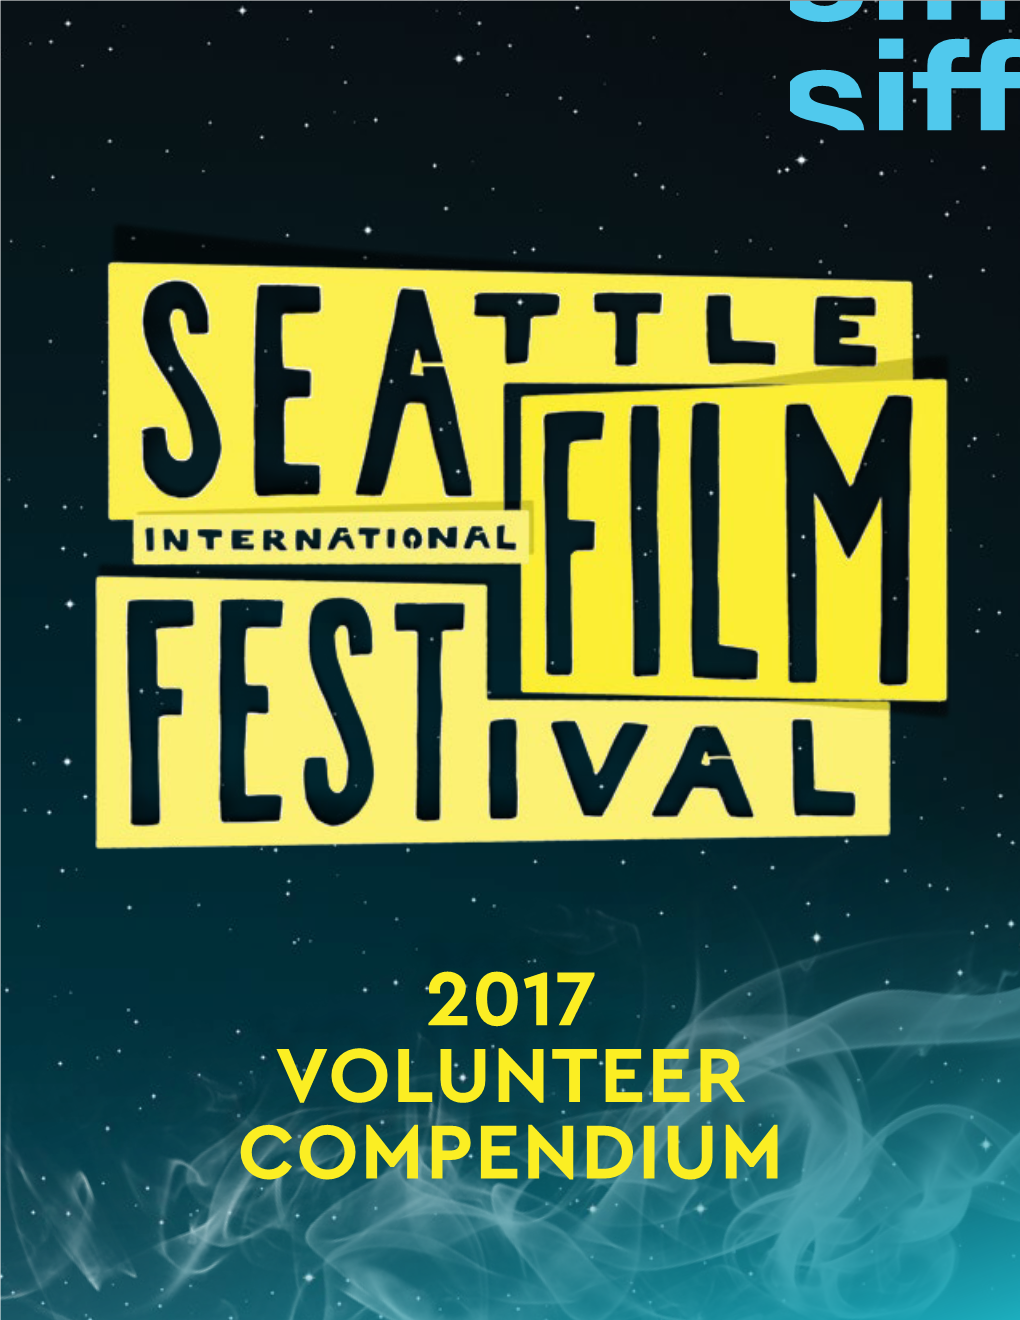 2017 Volunteer Compendium